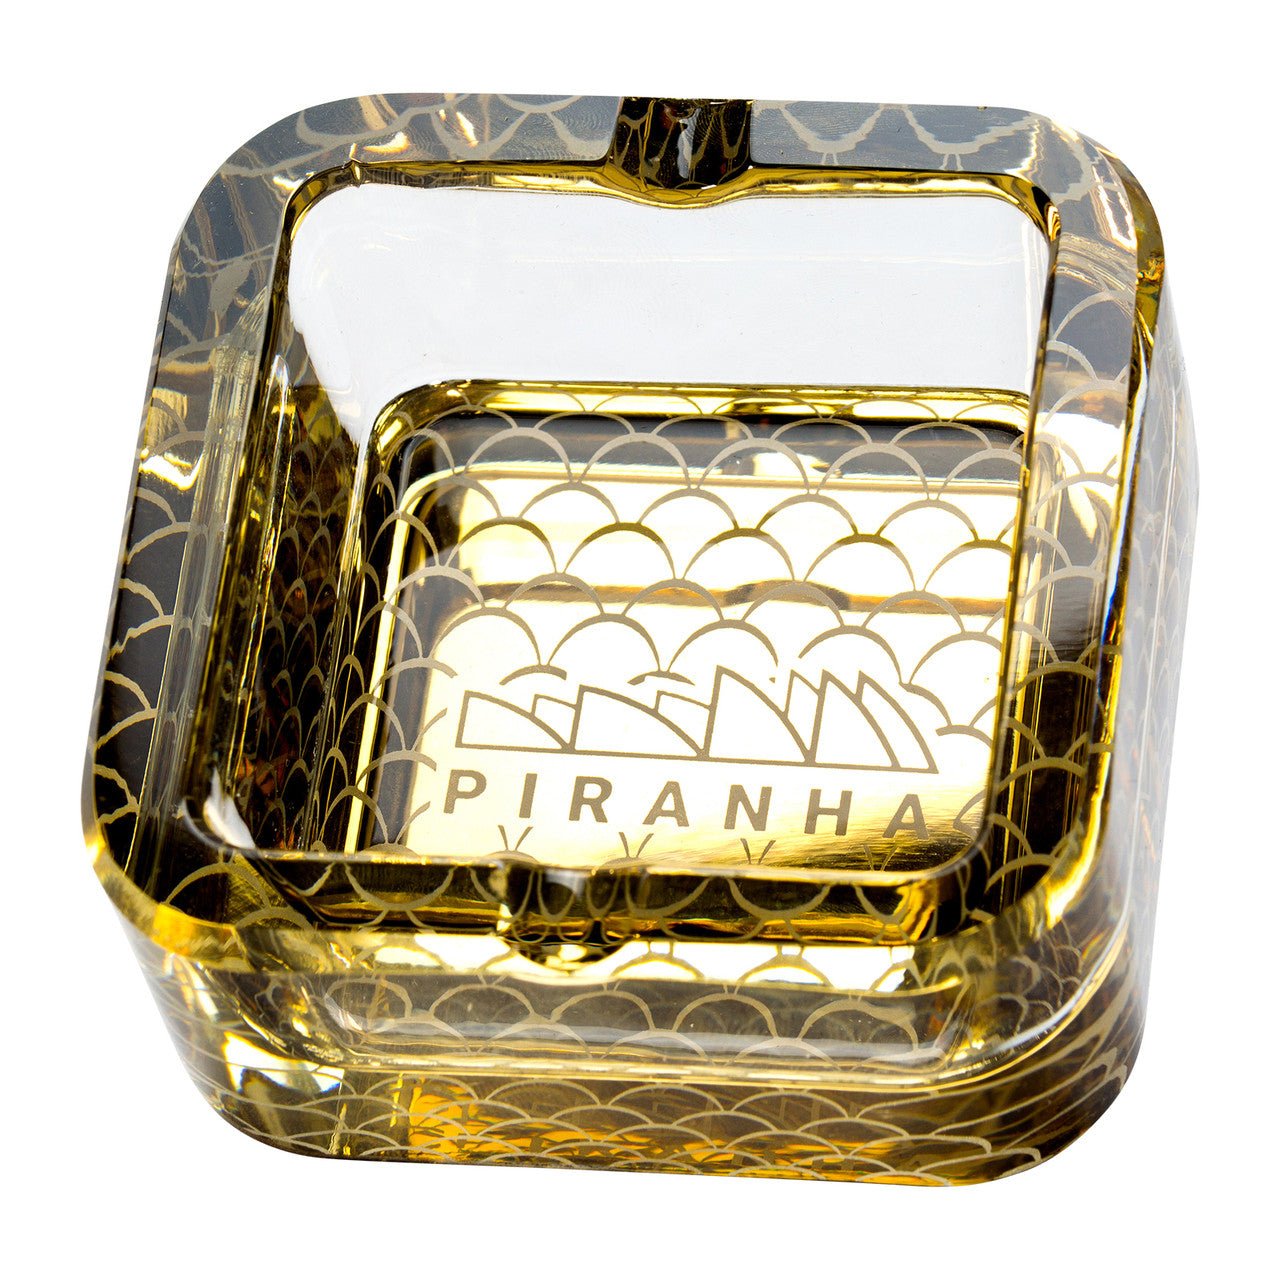 Piranha - Cube Glass Ashtray - HG - HG